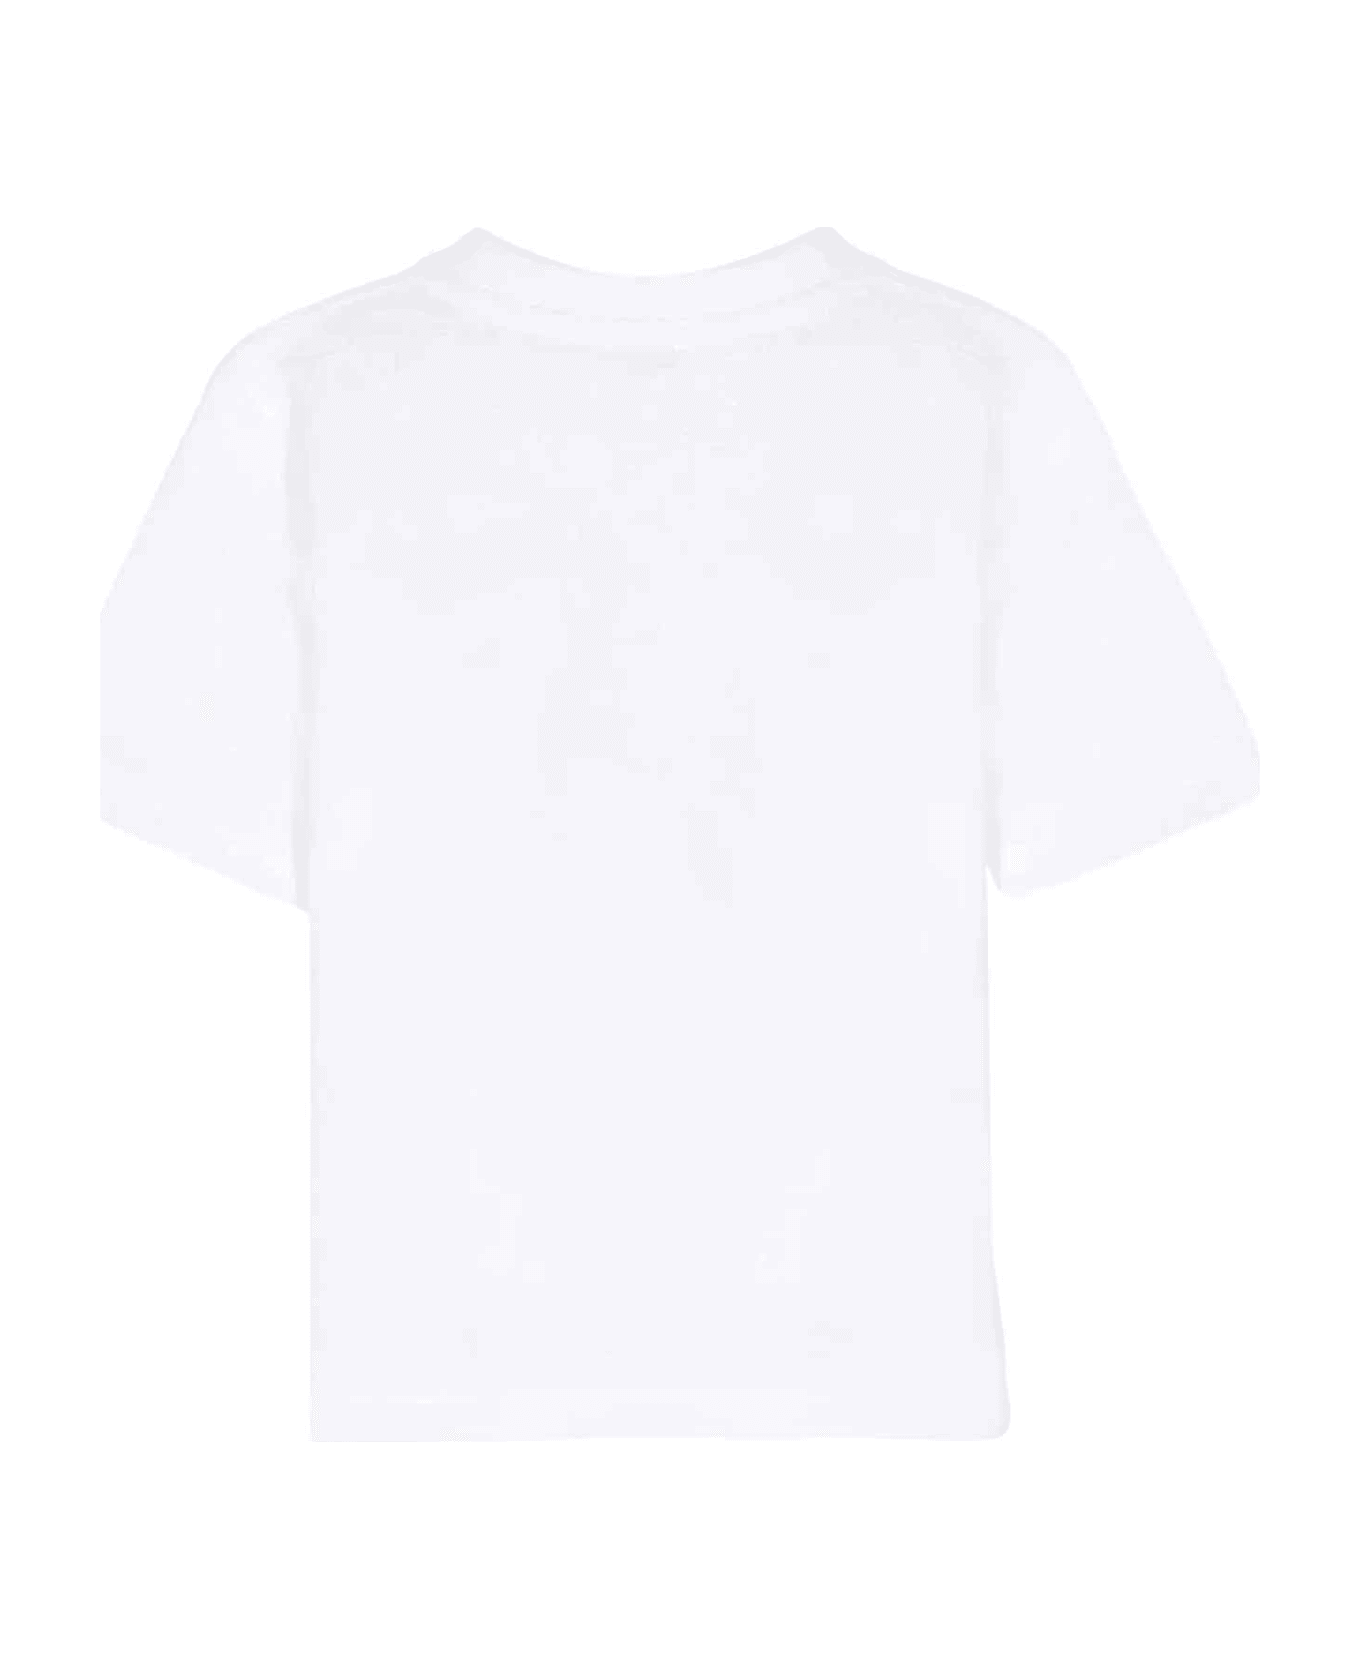 Burberry White T-shirt Baby Unisex - Bianco